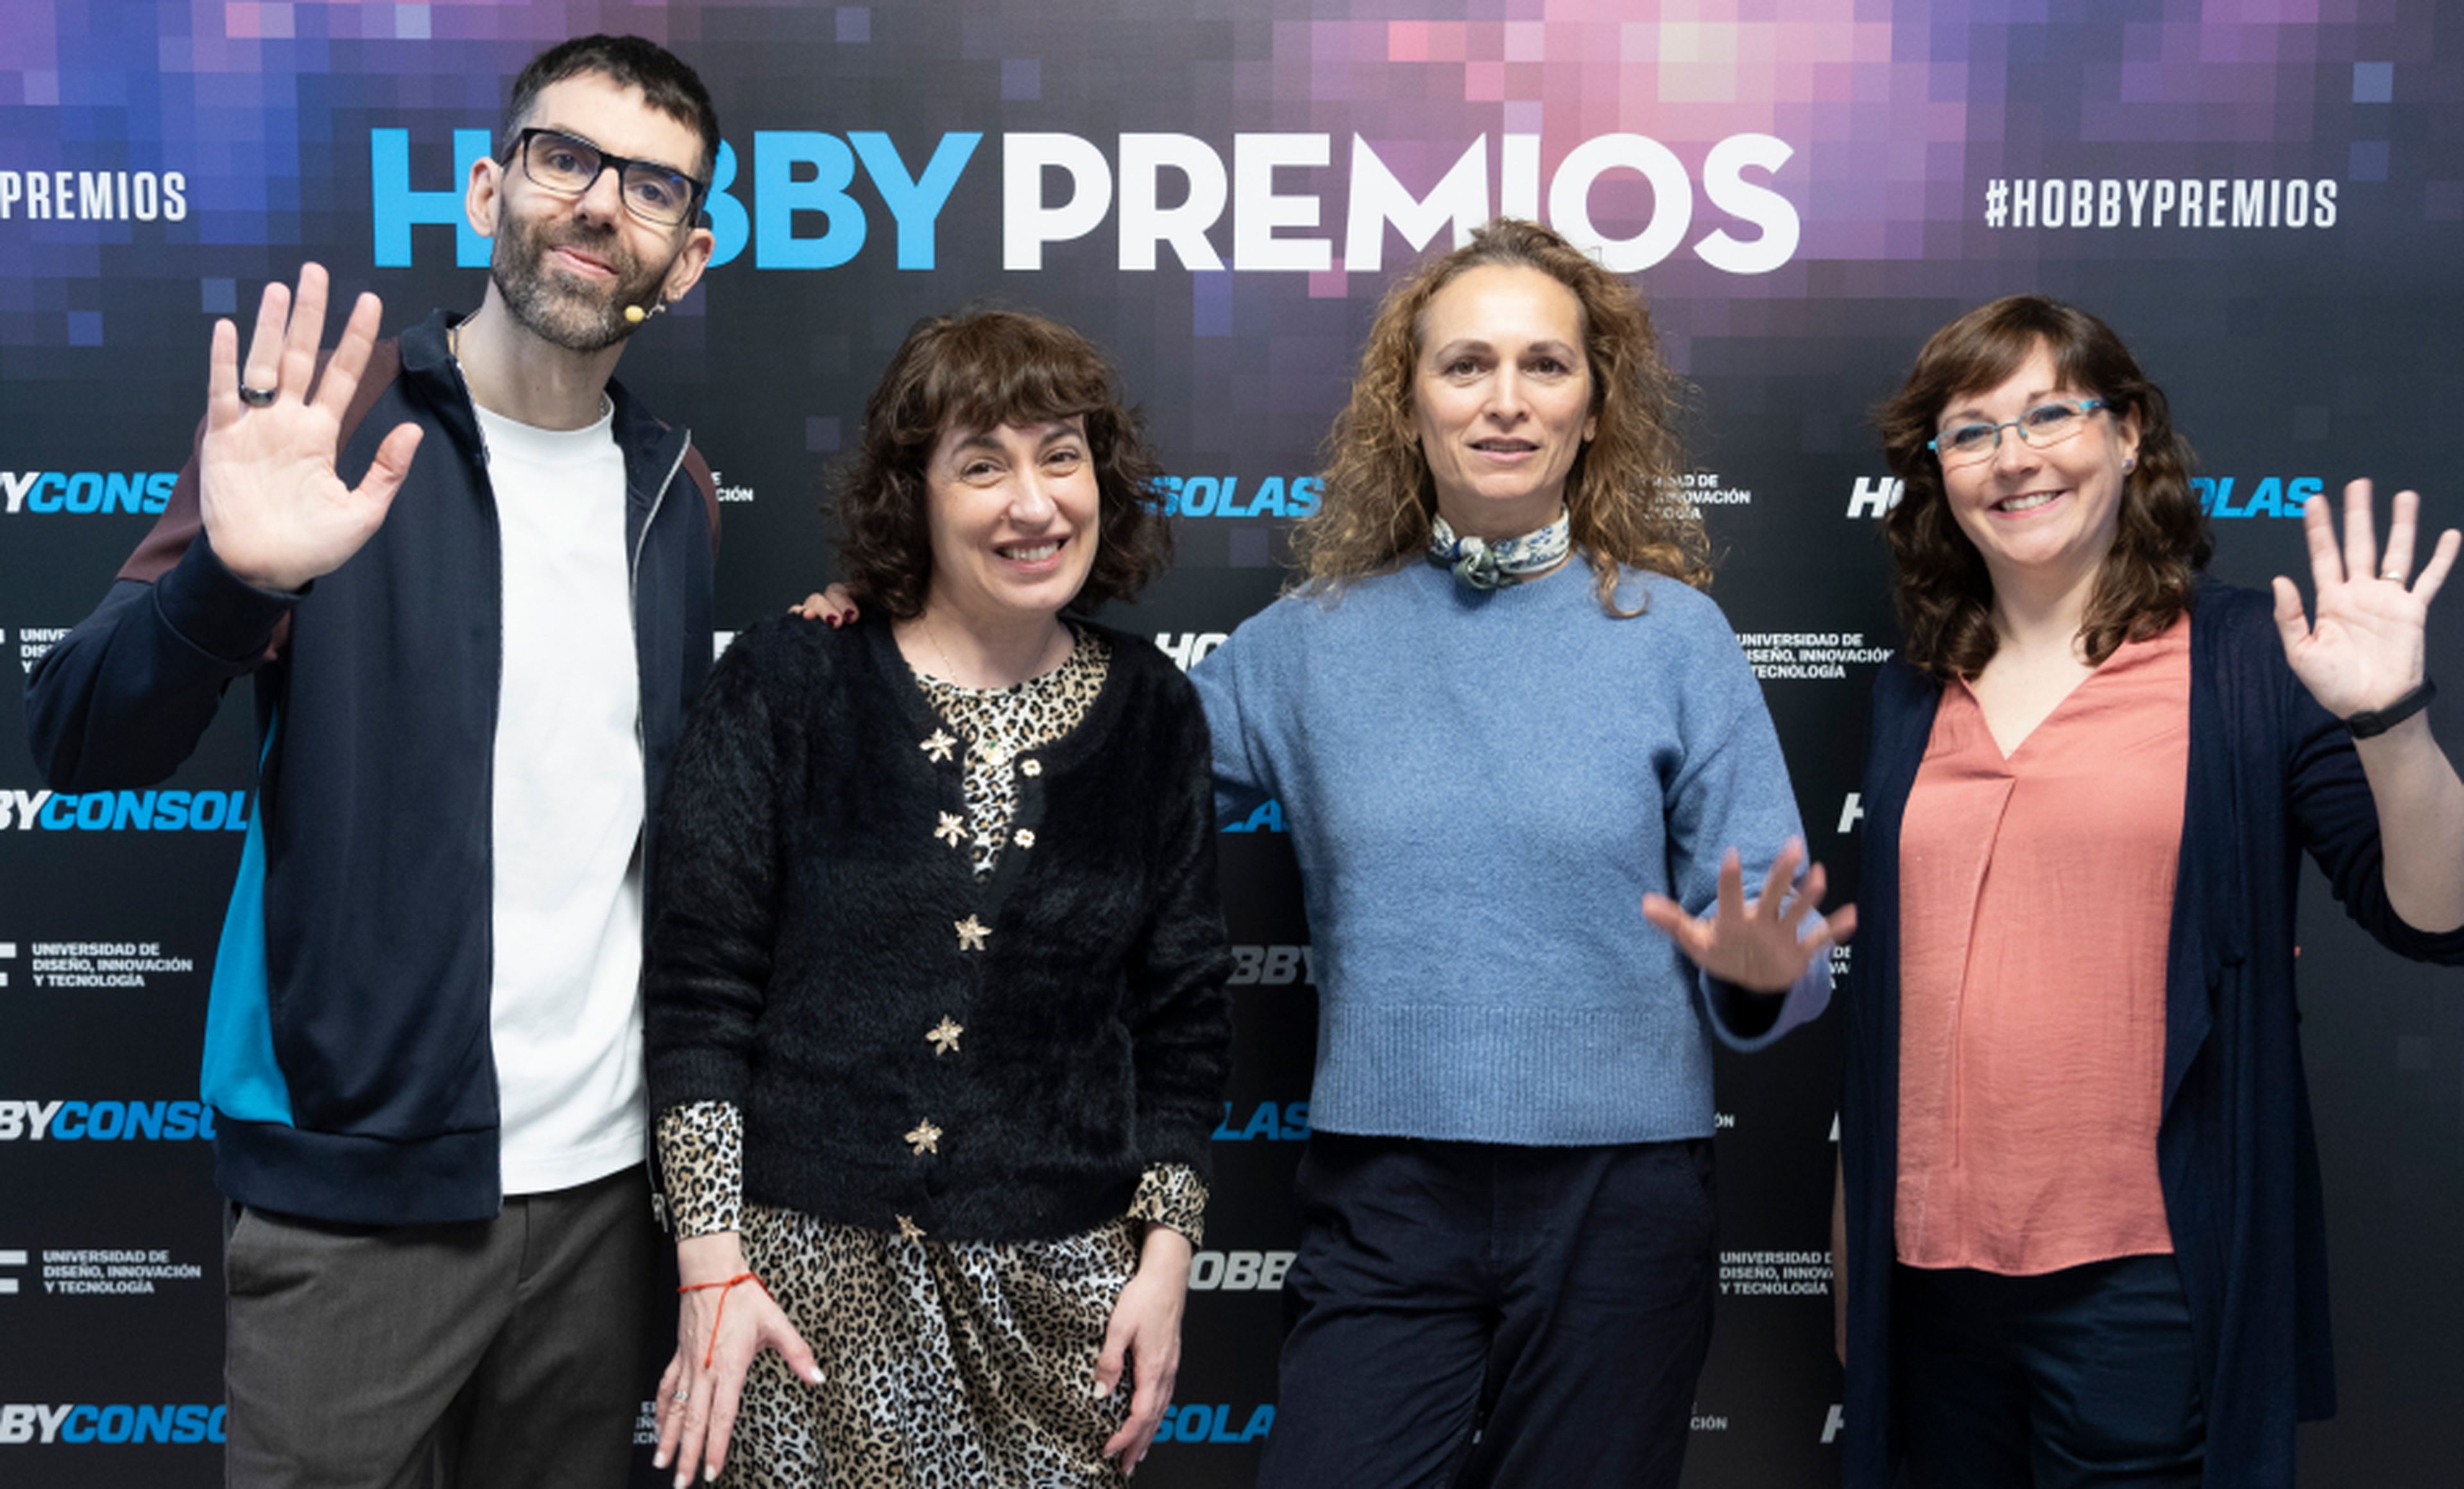 De izquierda a derecha: Ekaitz Ortega, coordinador de HobbyCine, Rut Rey, senior PR de Netflix, Eva Díaz, PR Manager de Netflix y Raquel Hernández, redactora de HobbyCine.